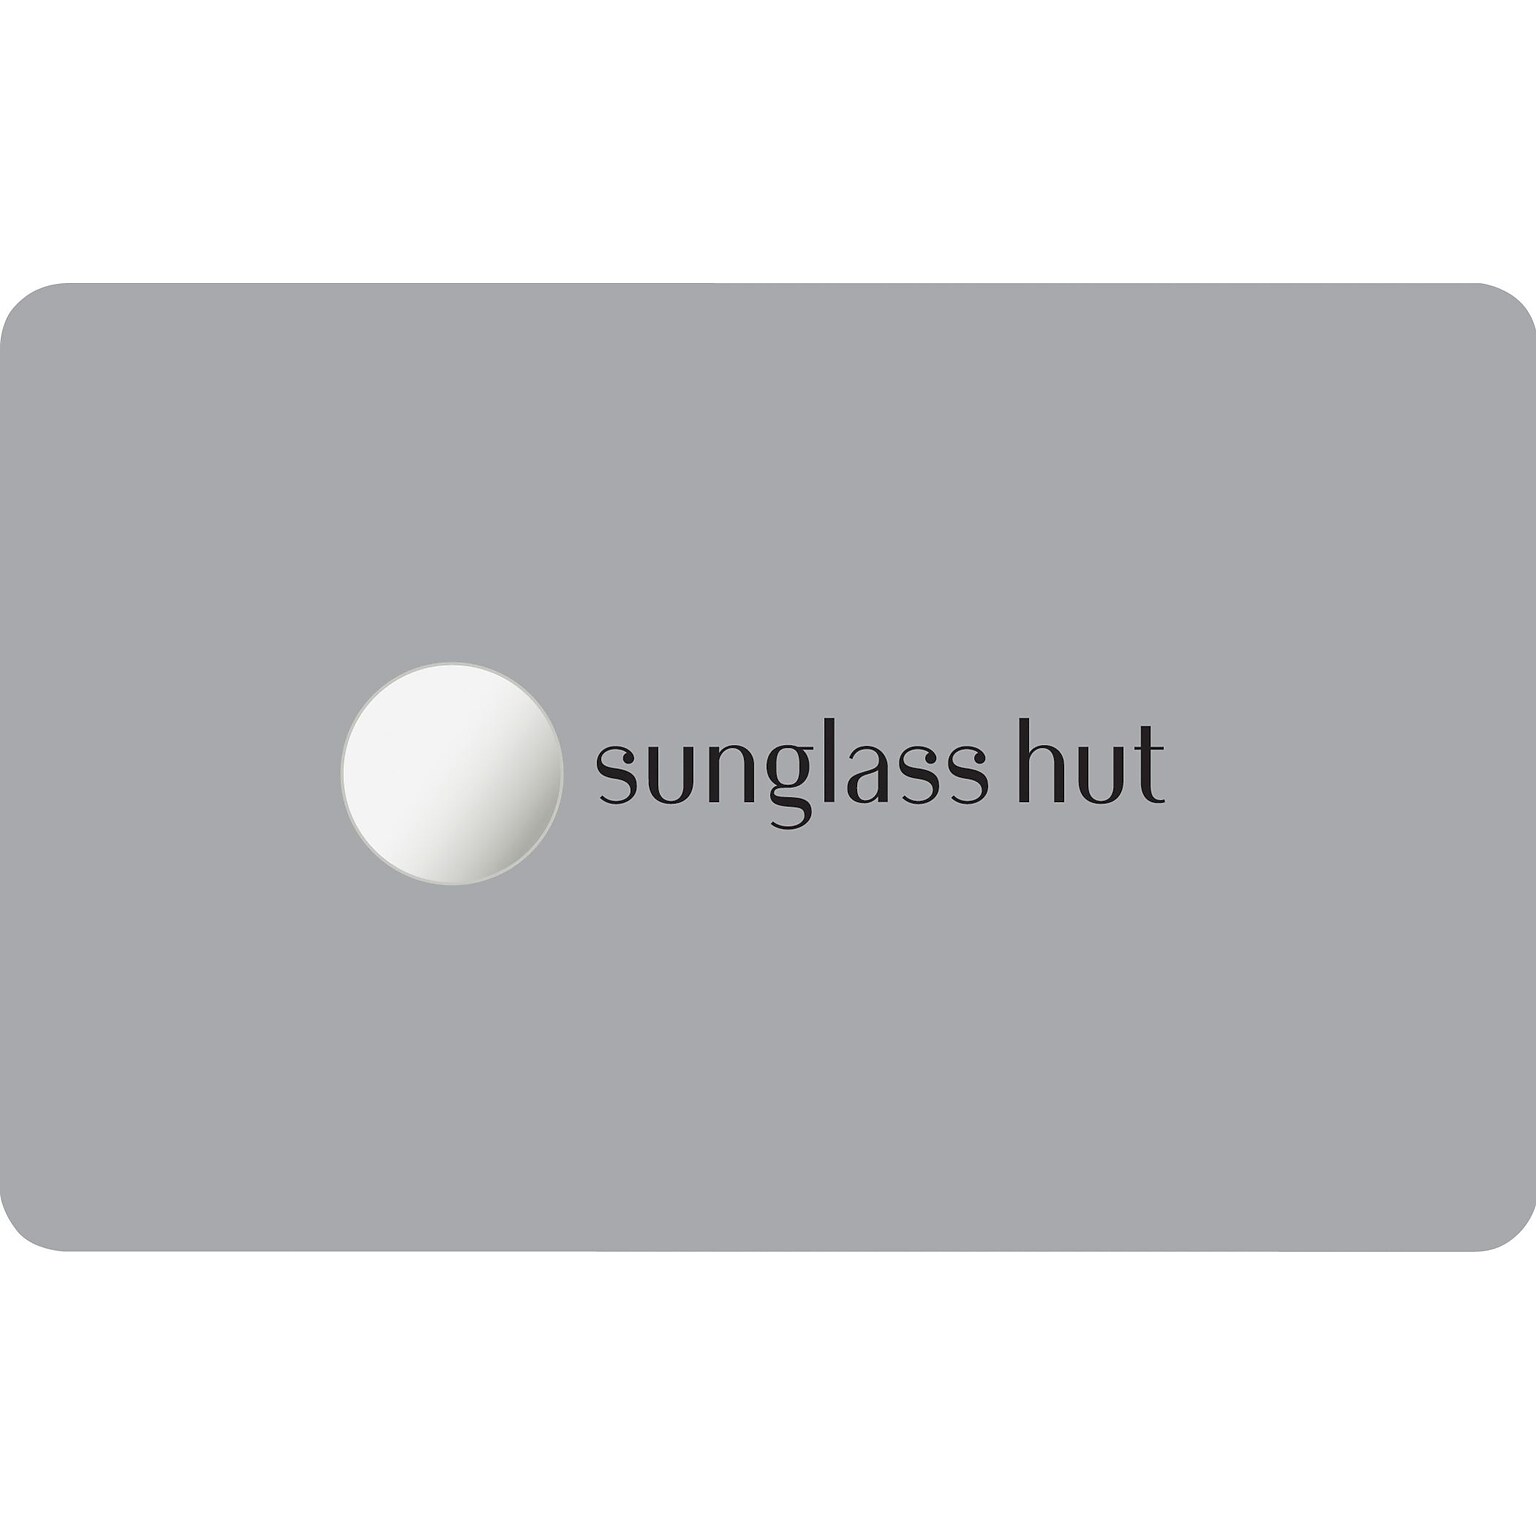 Sunglass Hut Gift Card $100